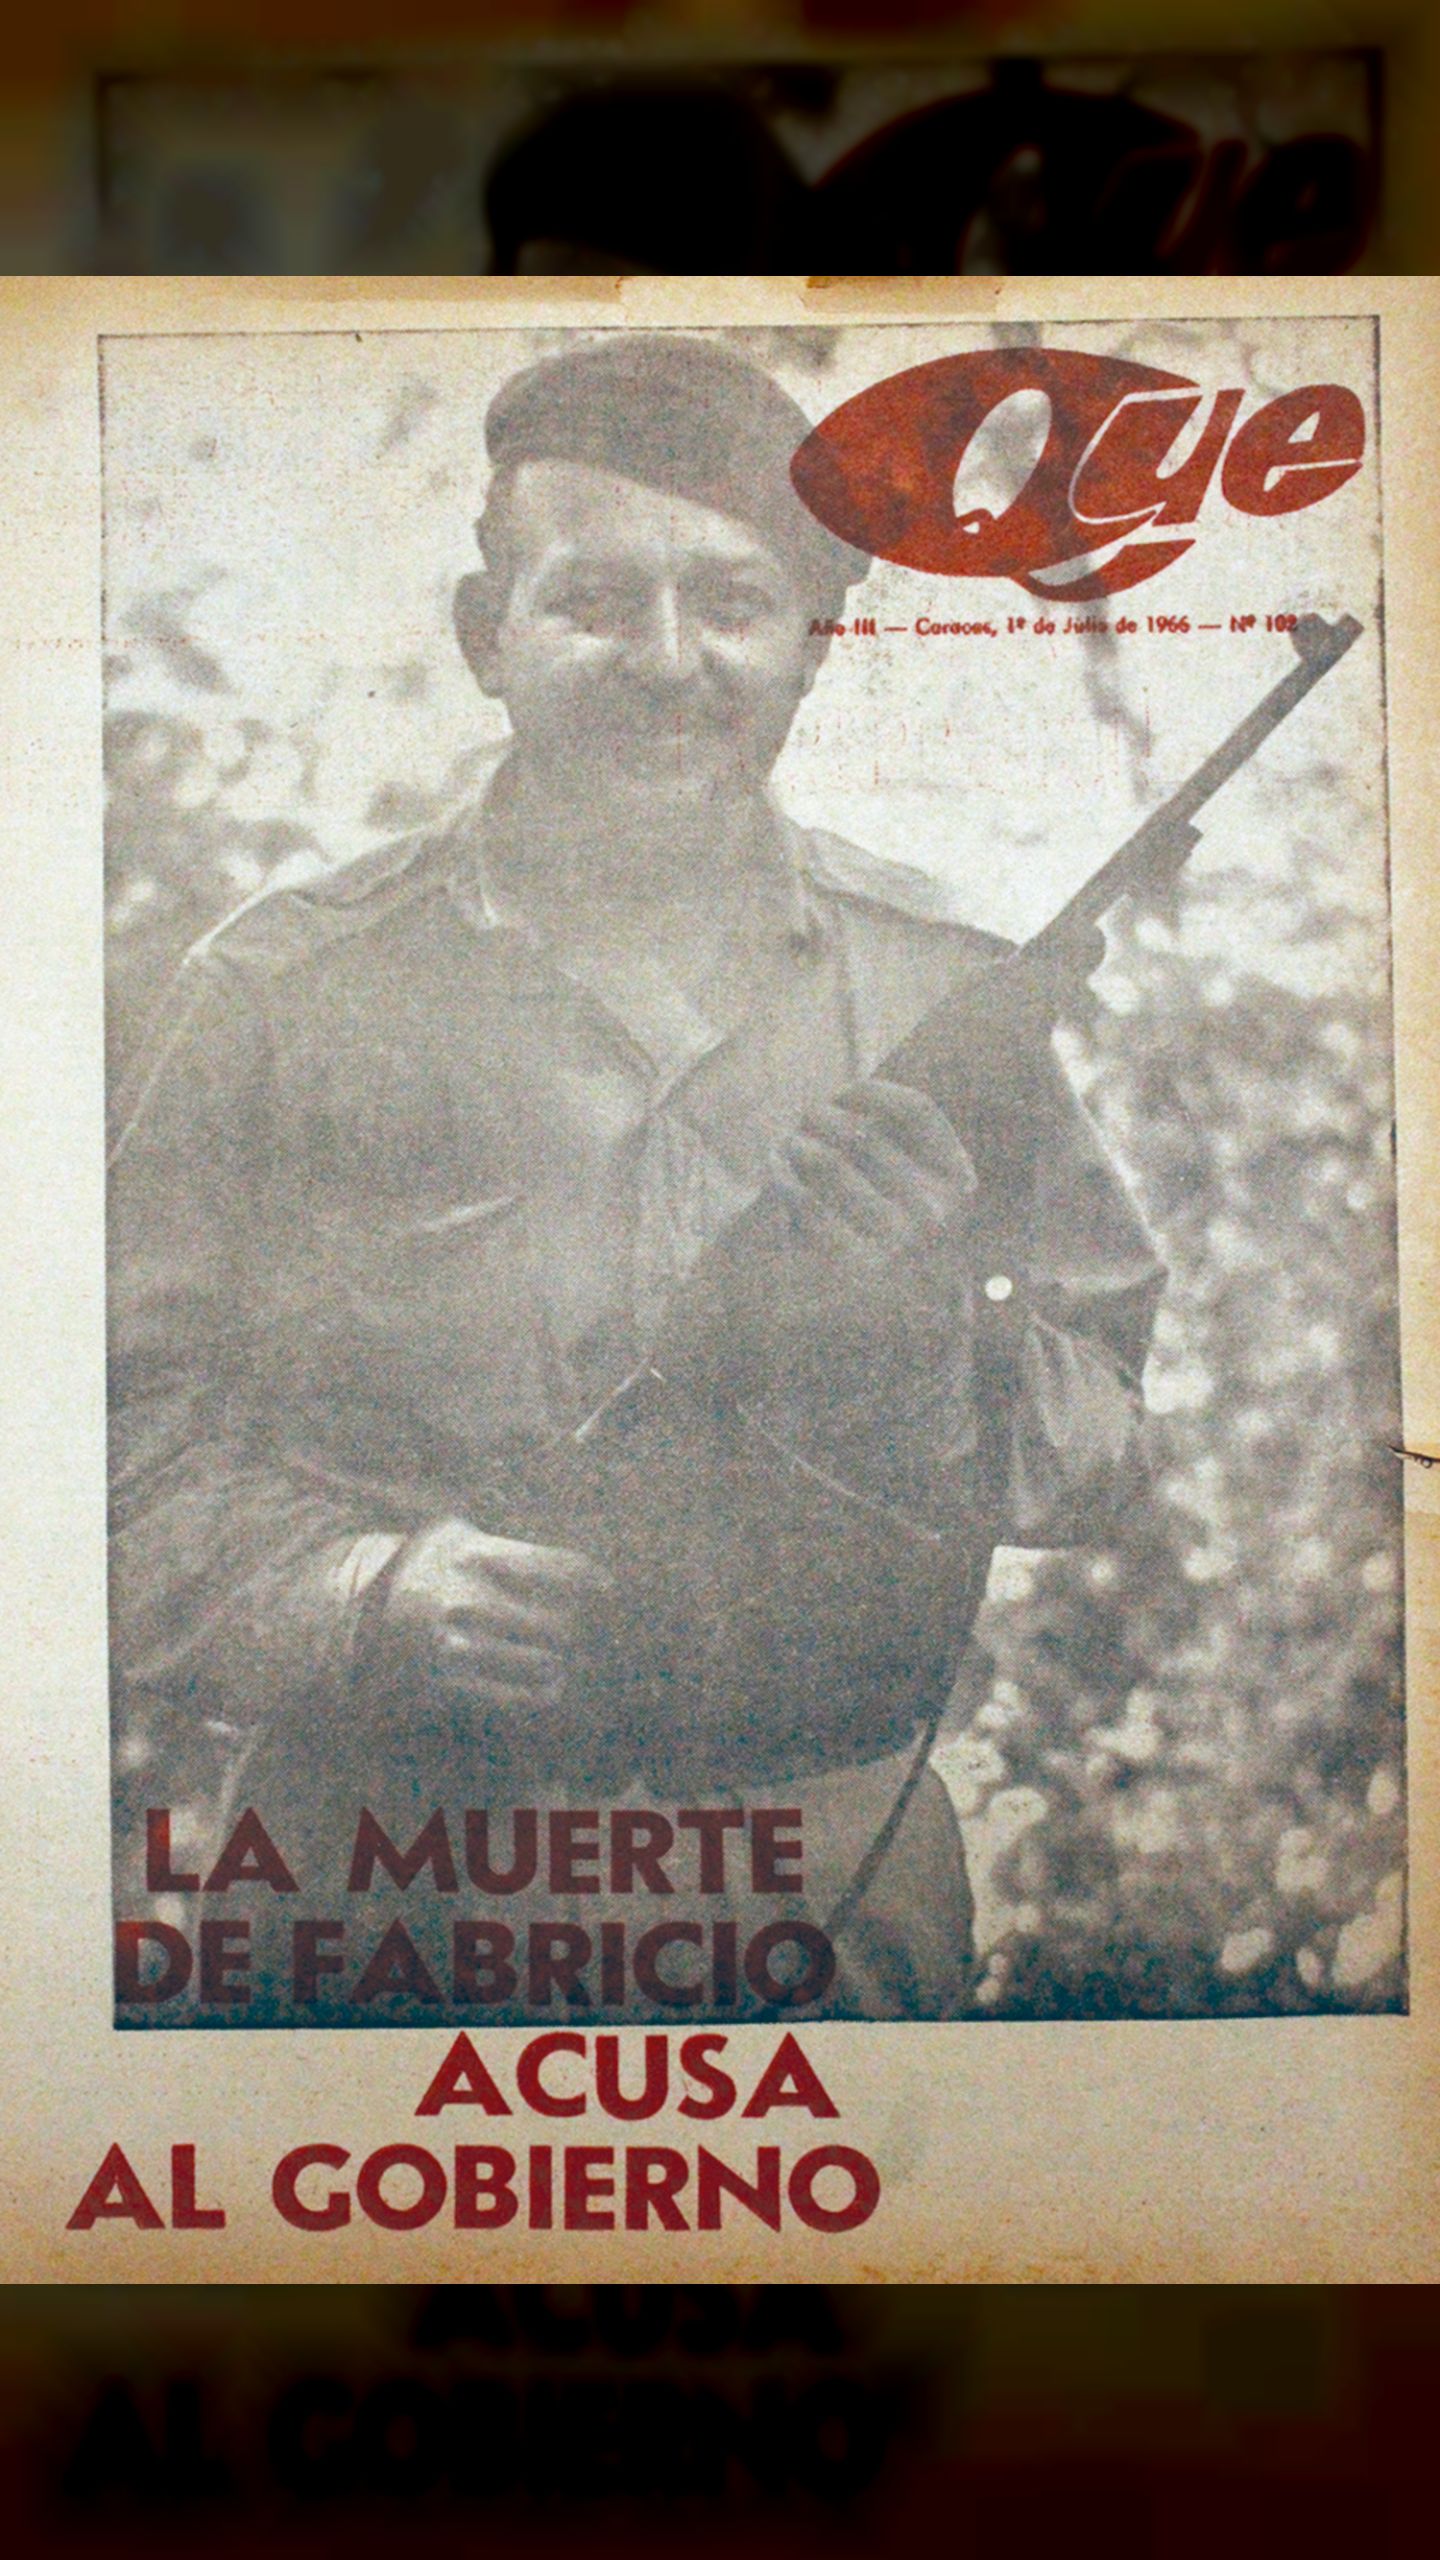 LA MUERTE DE FABRICIO OJEDA (Qué pasa en Venezuela, julio 1966)